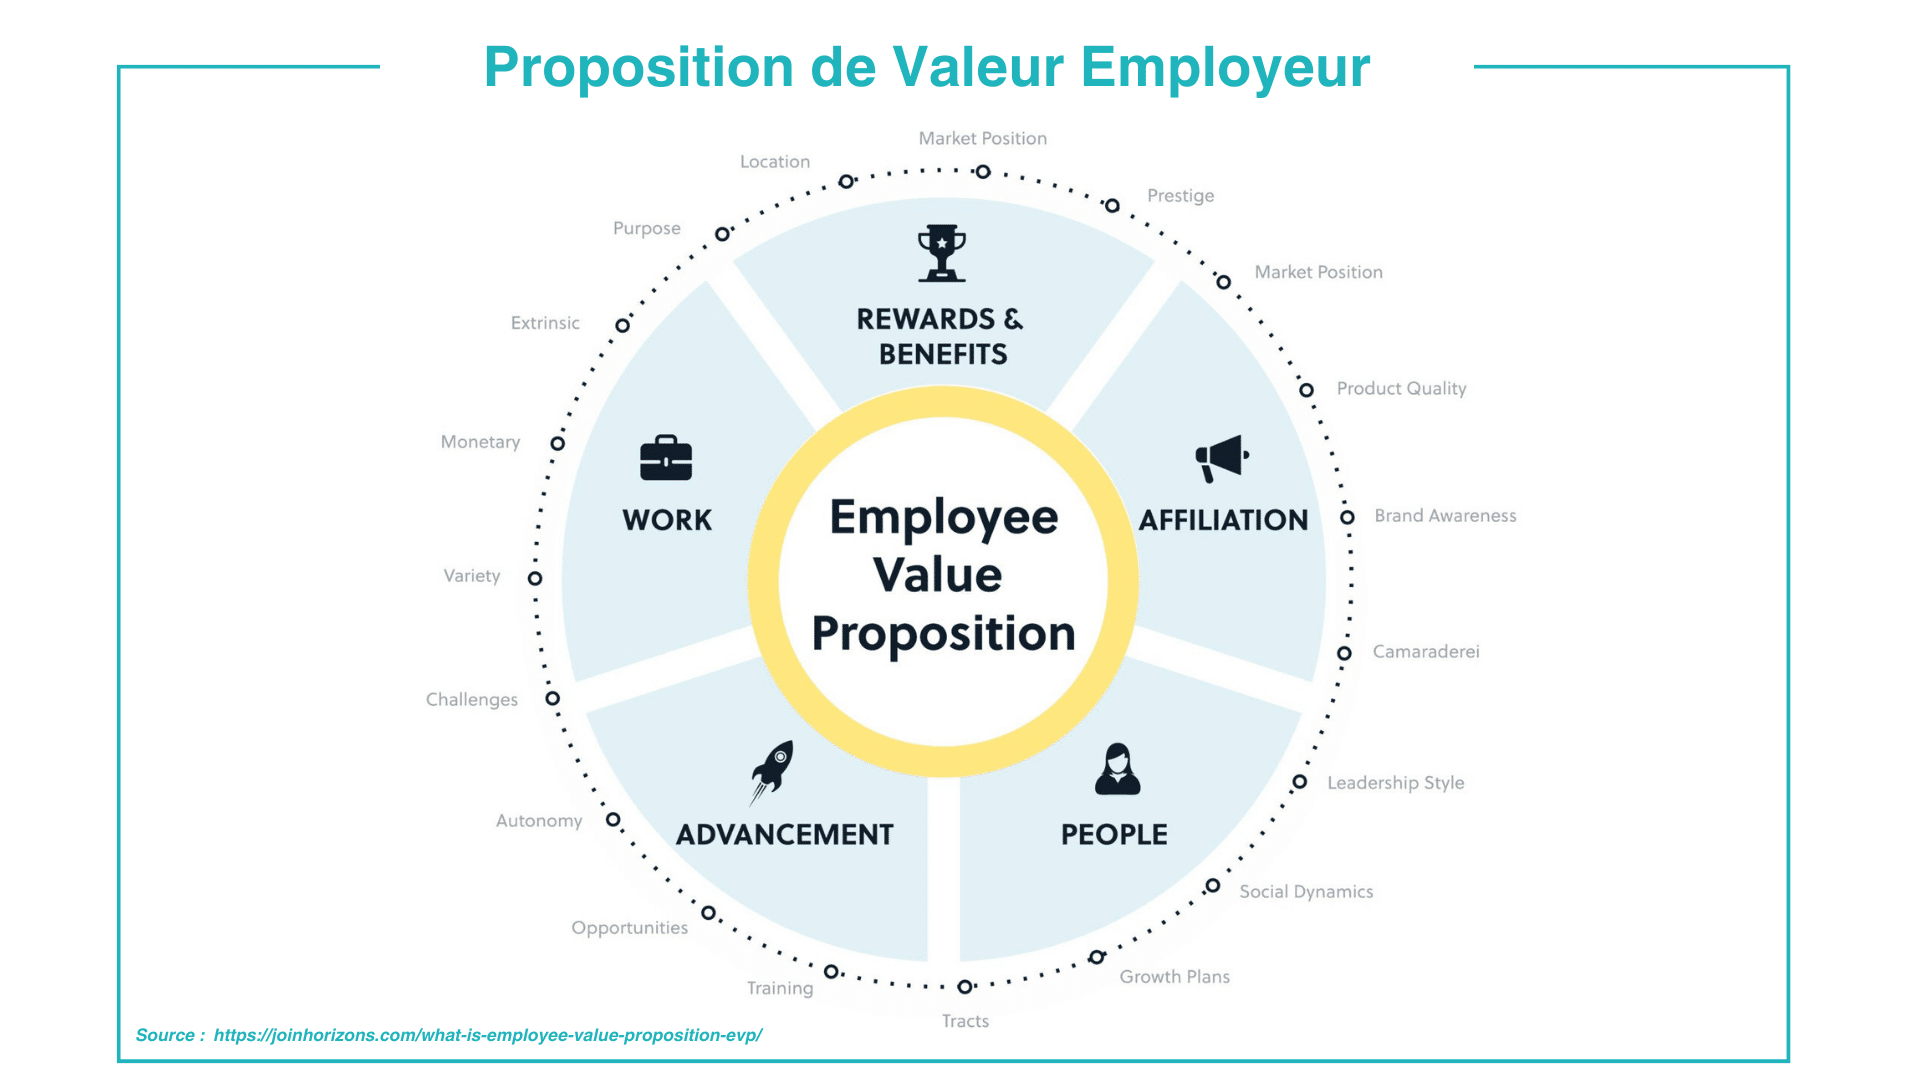 Les grandes typologies de proposition de valeur employeur